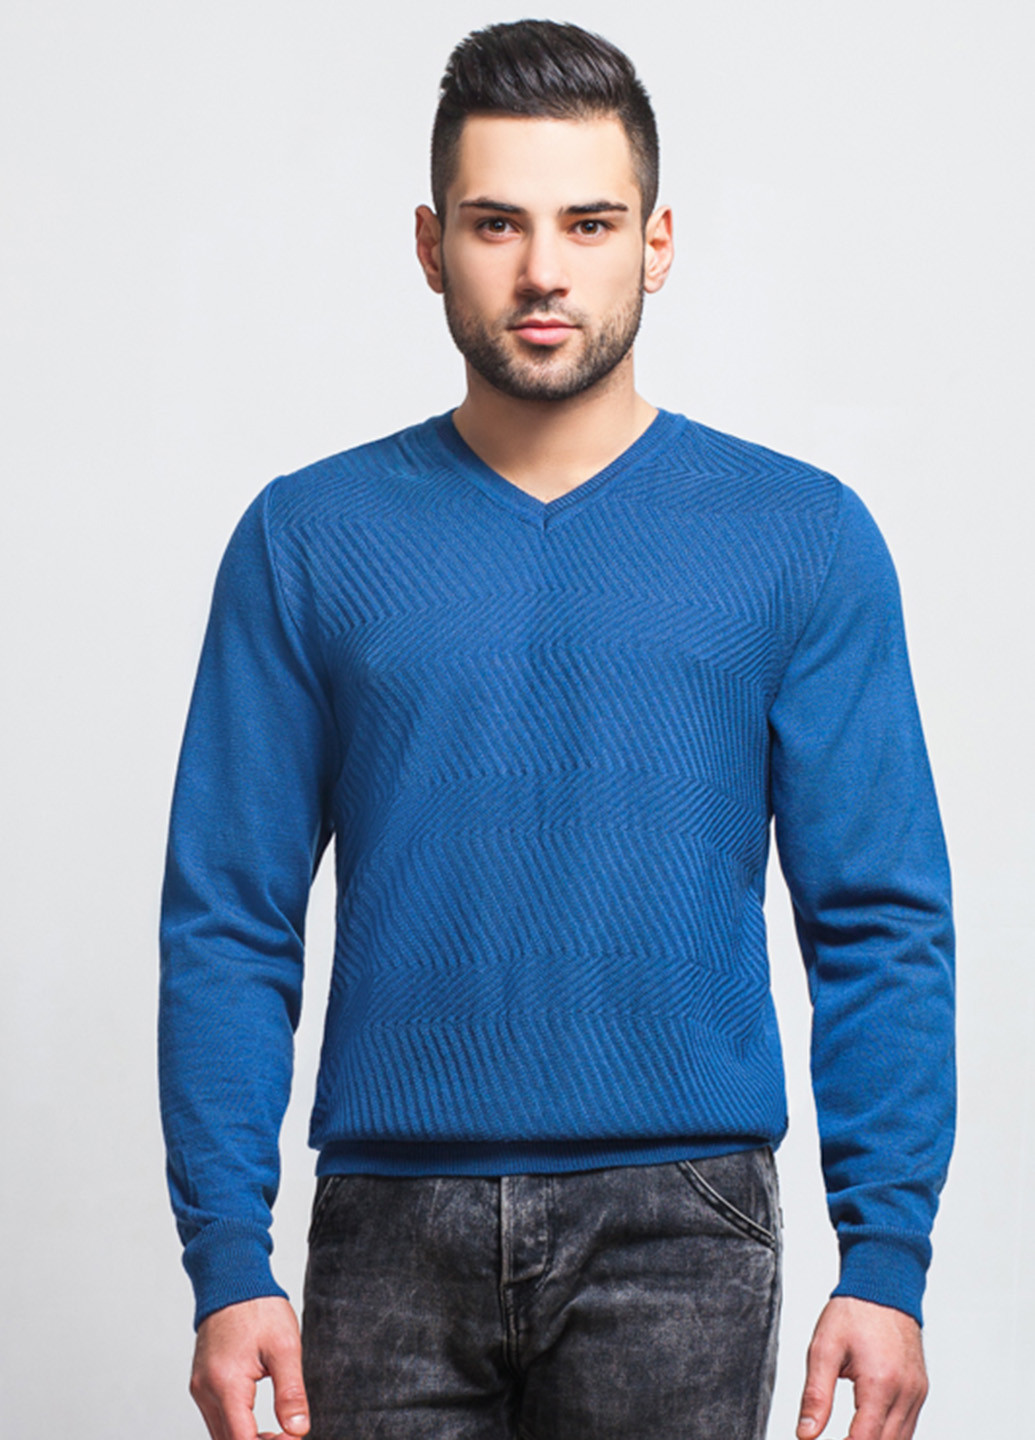 Светло-синий демисезонный пуловер пуловер SVTR